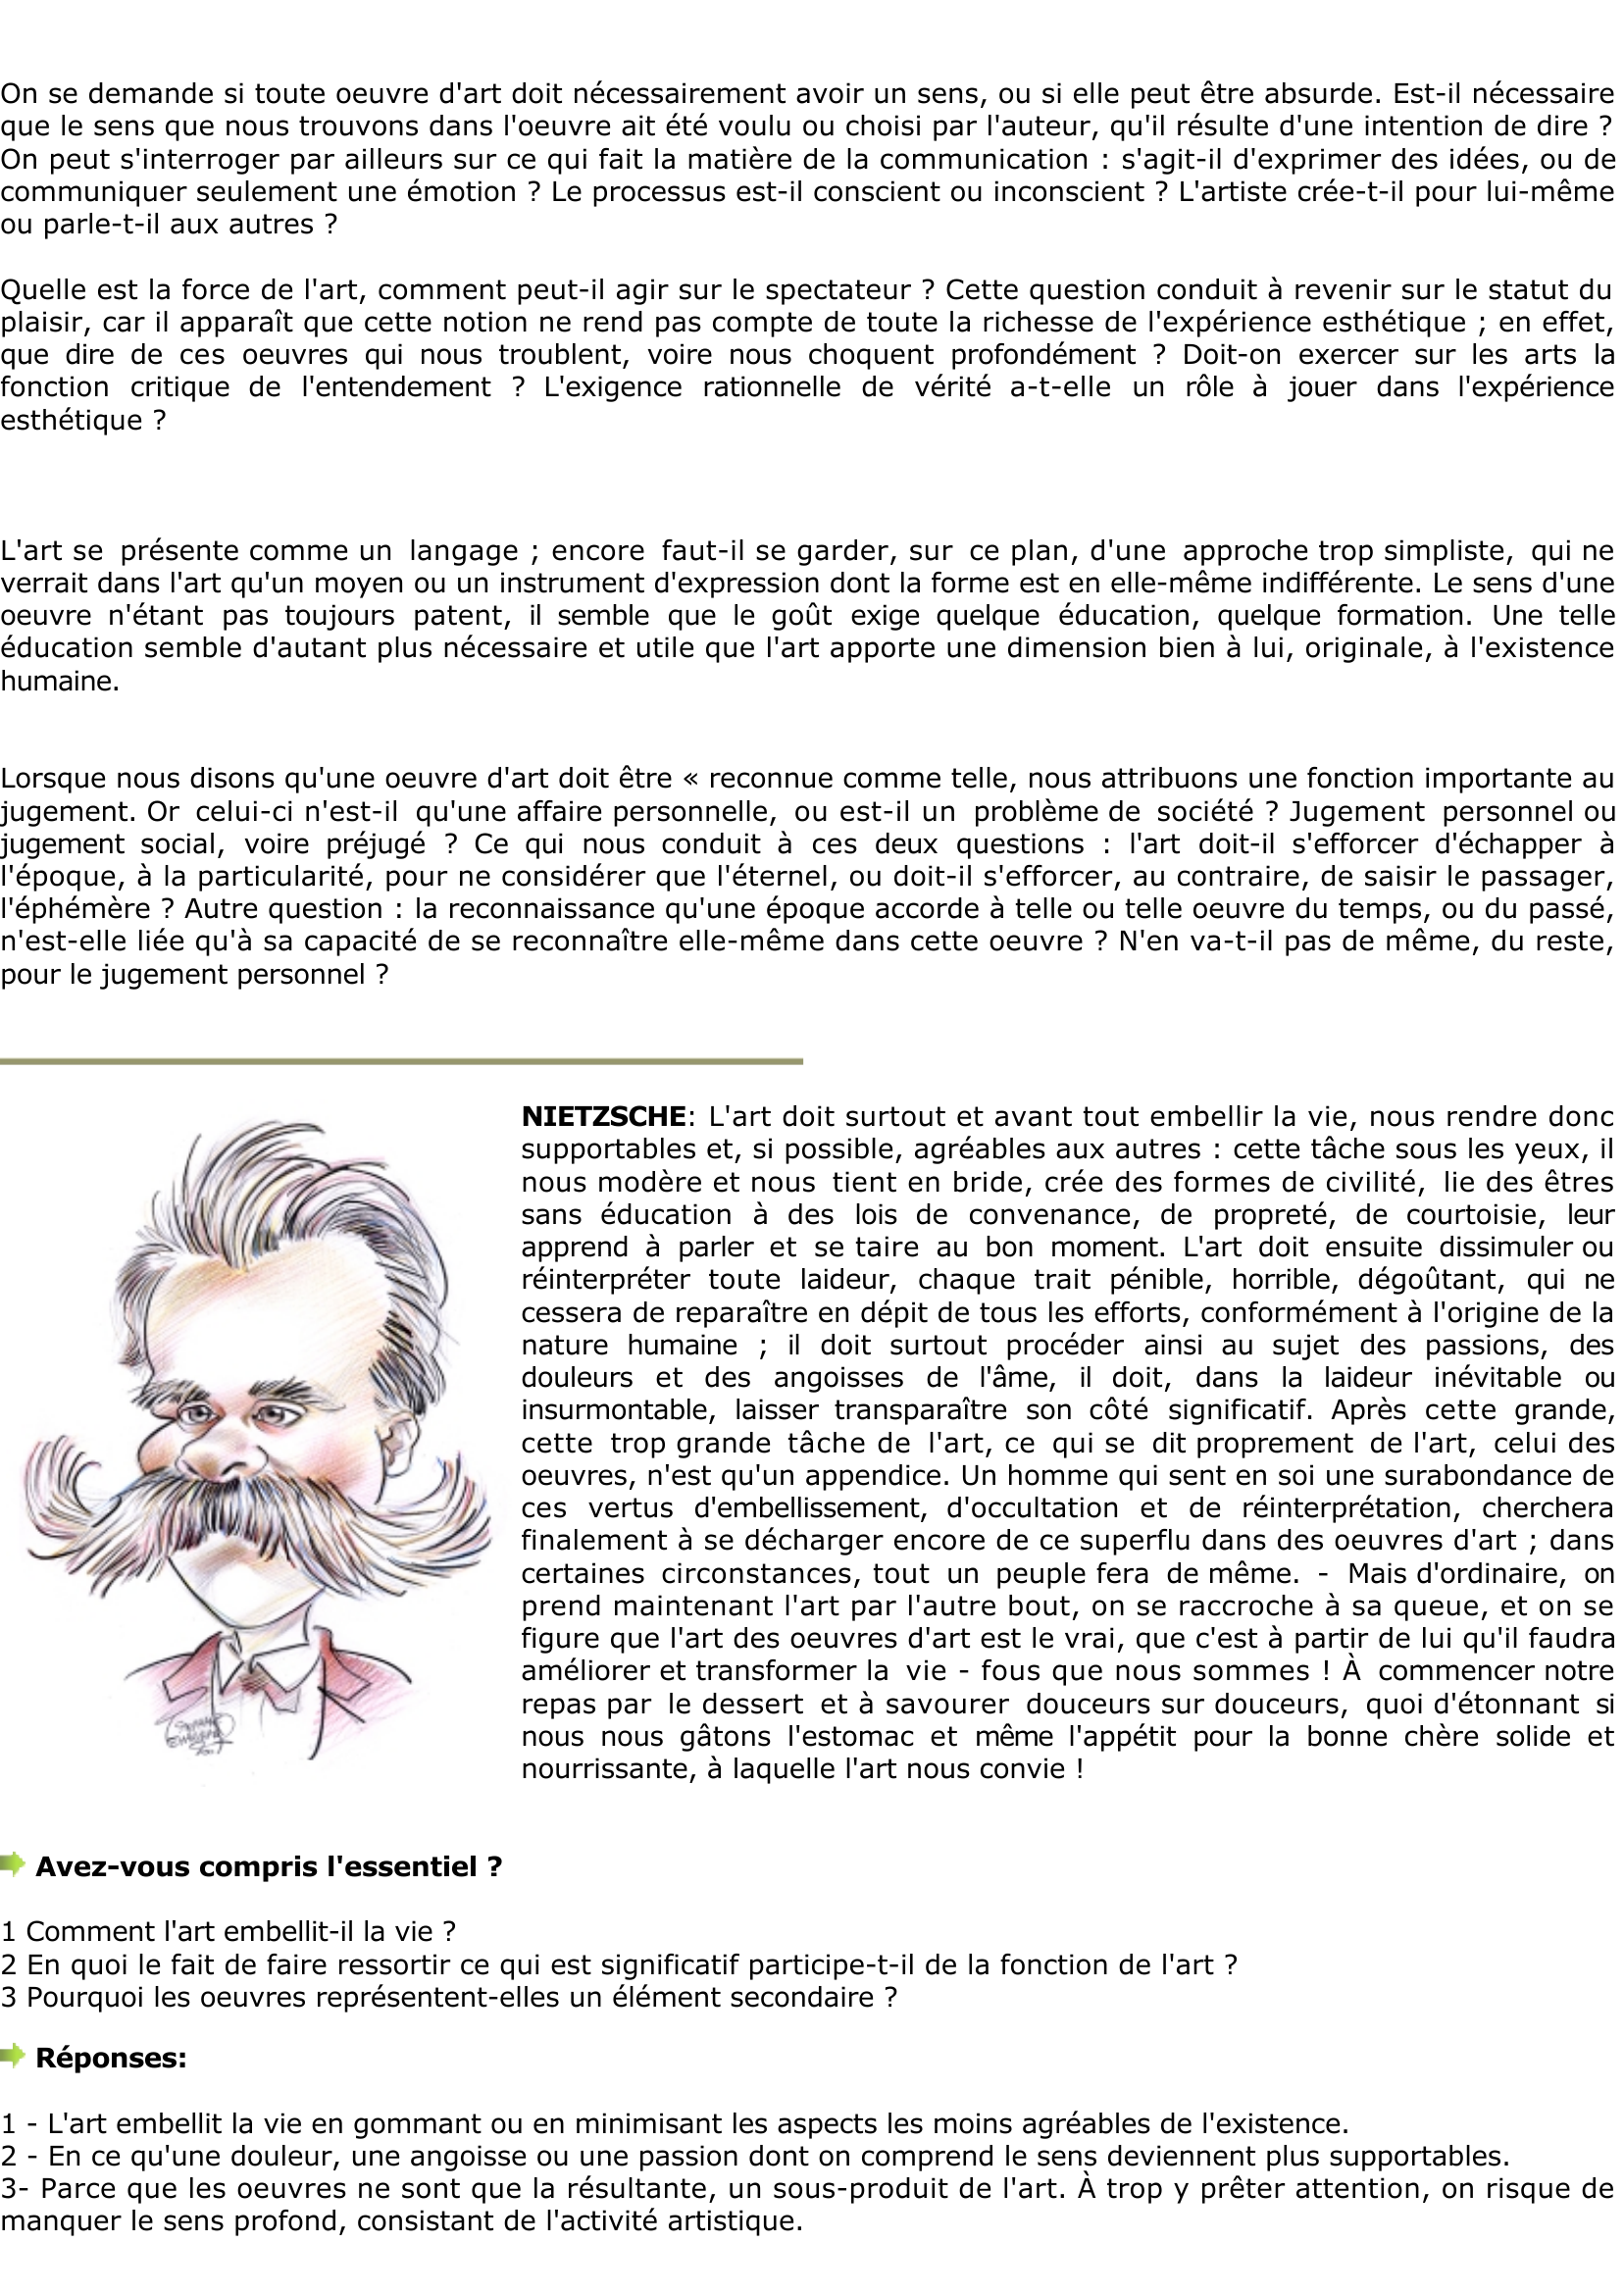 Prévisualisation du document Nietzsche: Embellir la vie, est-ce la fonction de l'art ?